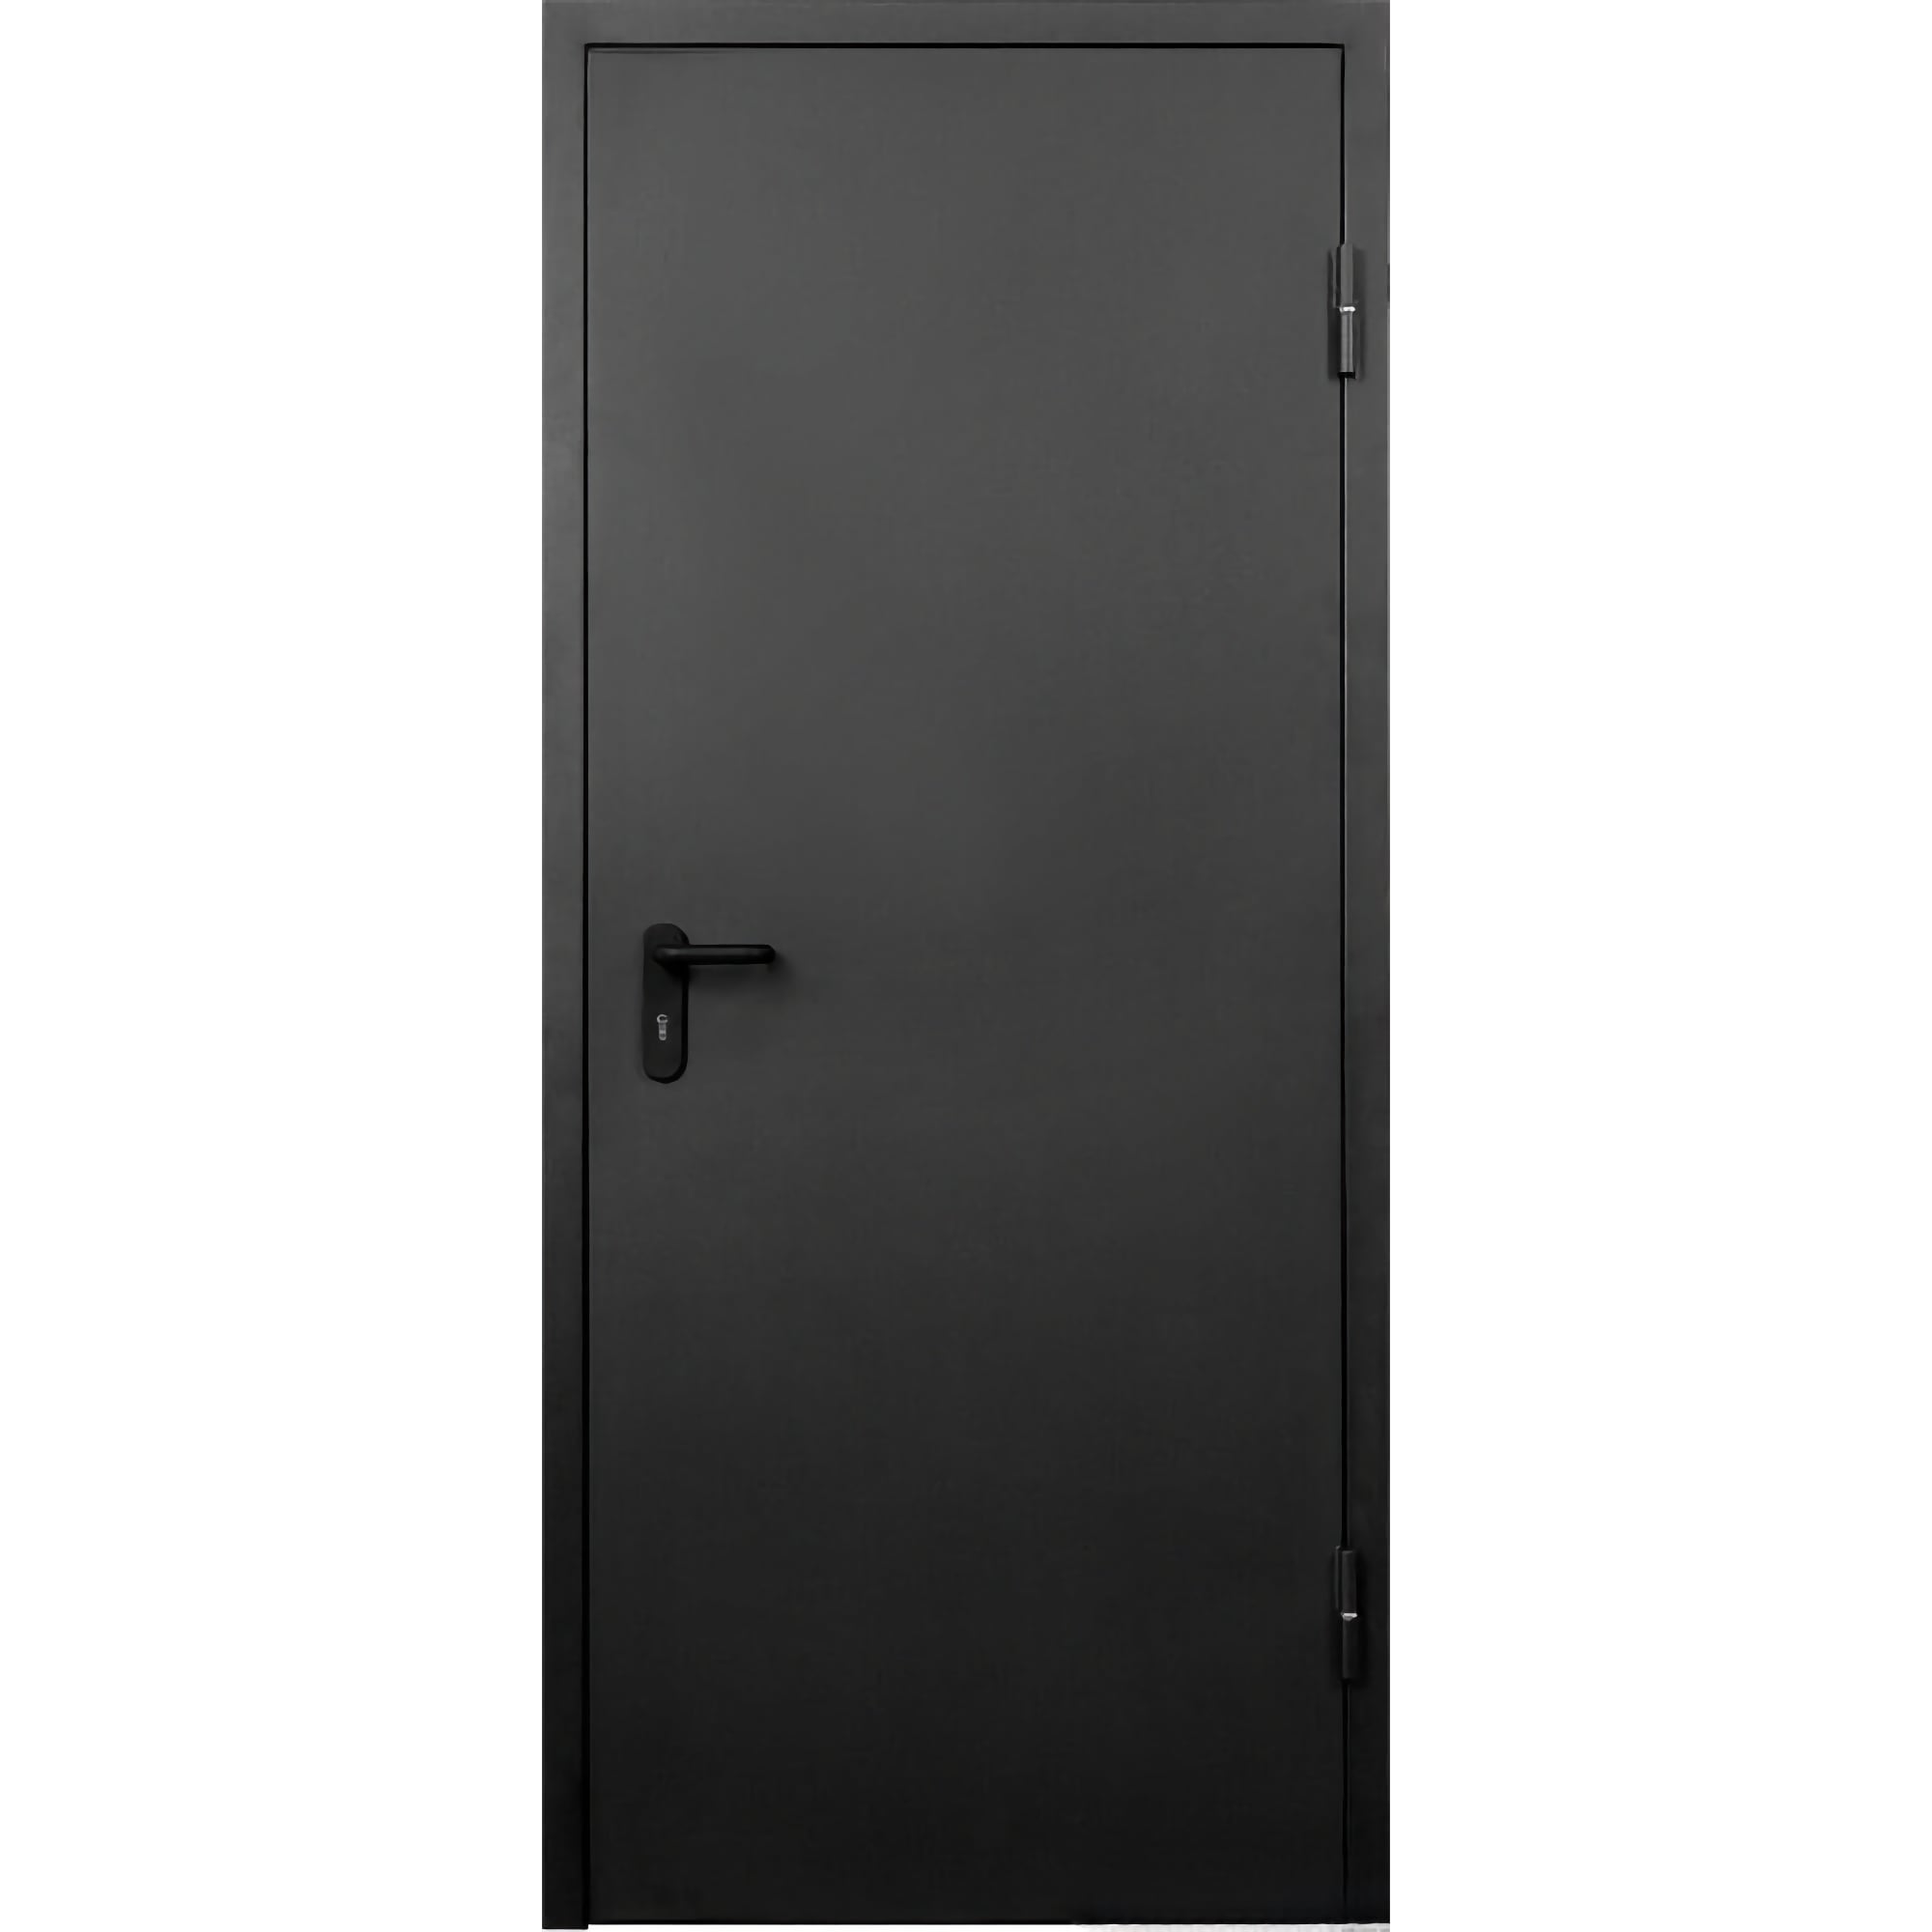 Противопожарная дверь с доставкой и установкой, в наличии на складе - TD-EI-30 • 960*2050